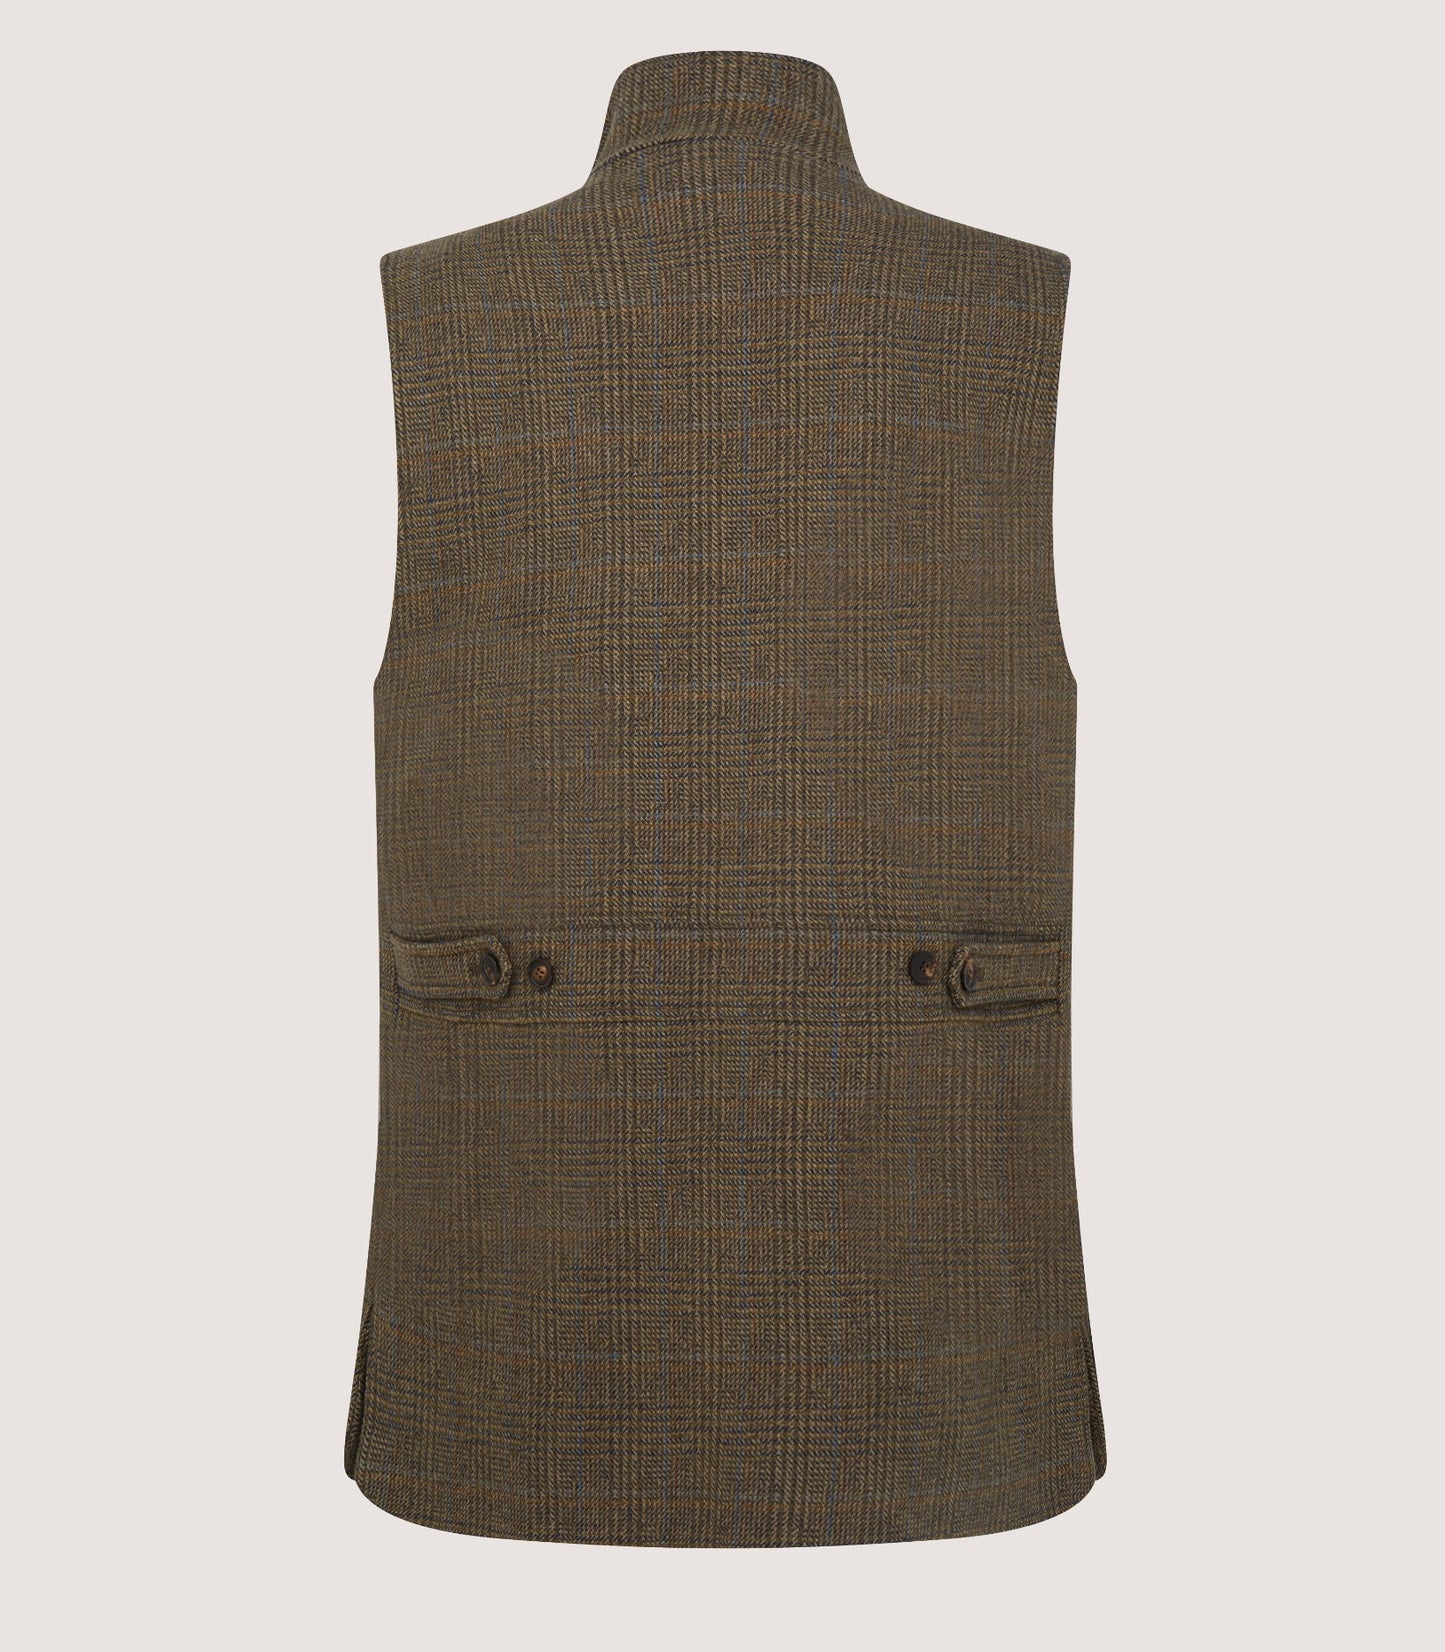 Men's Tweed High Collar Sporting Vest